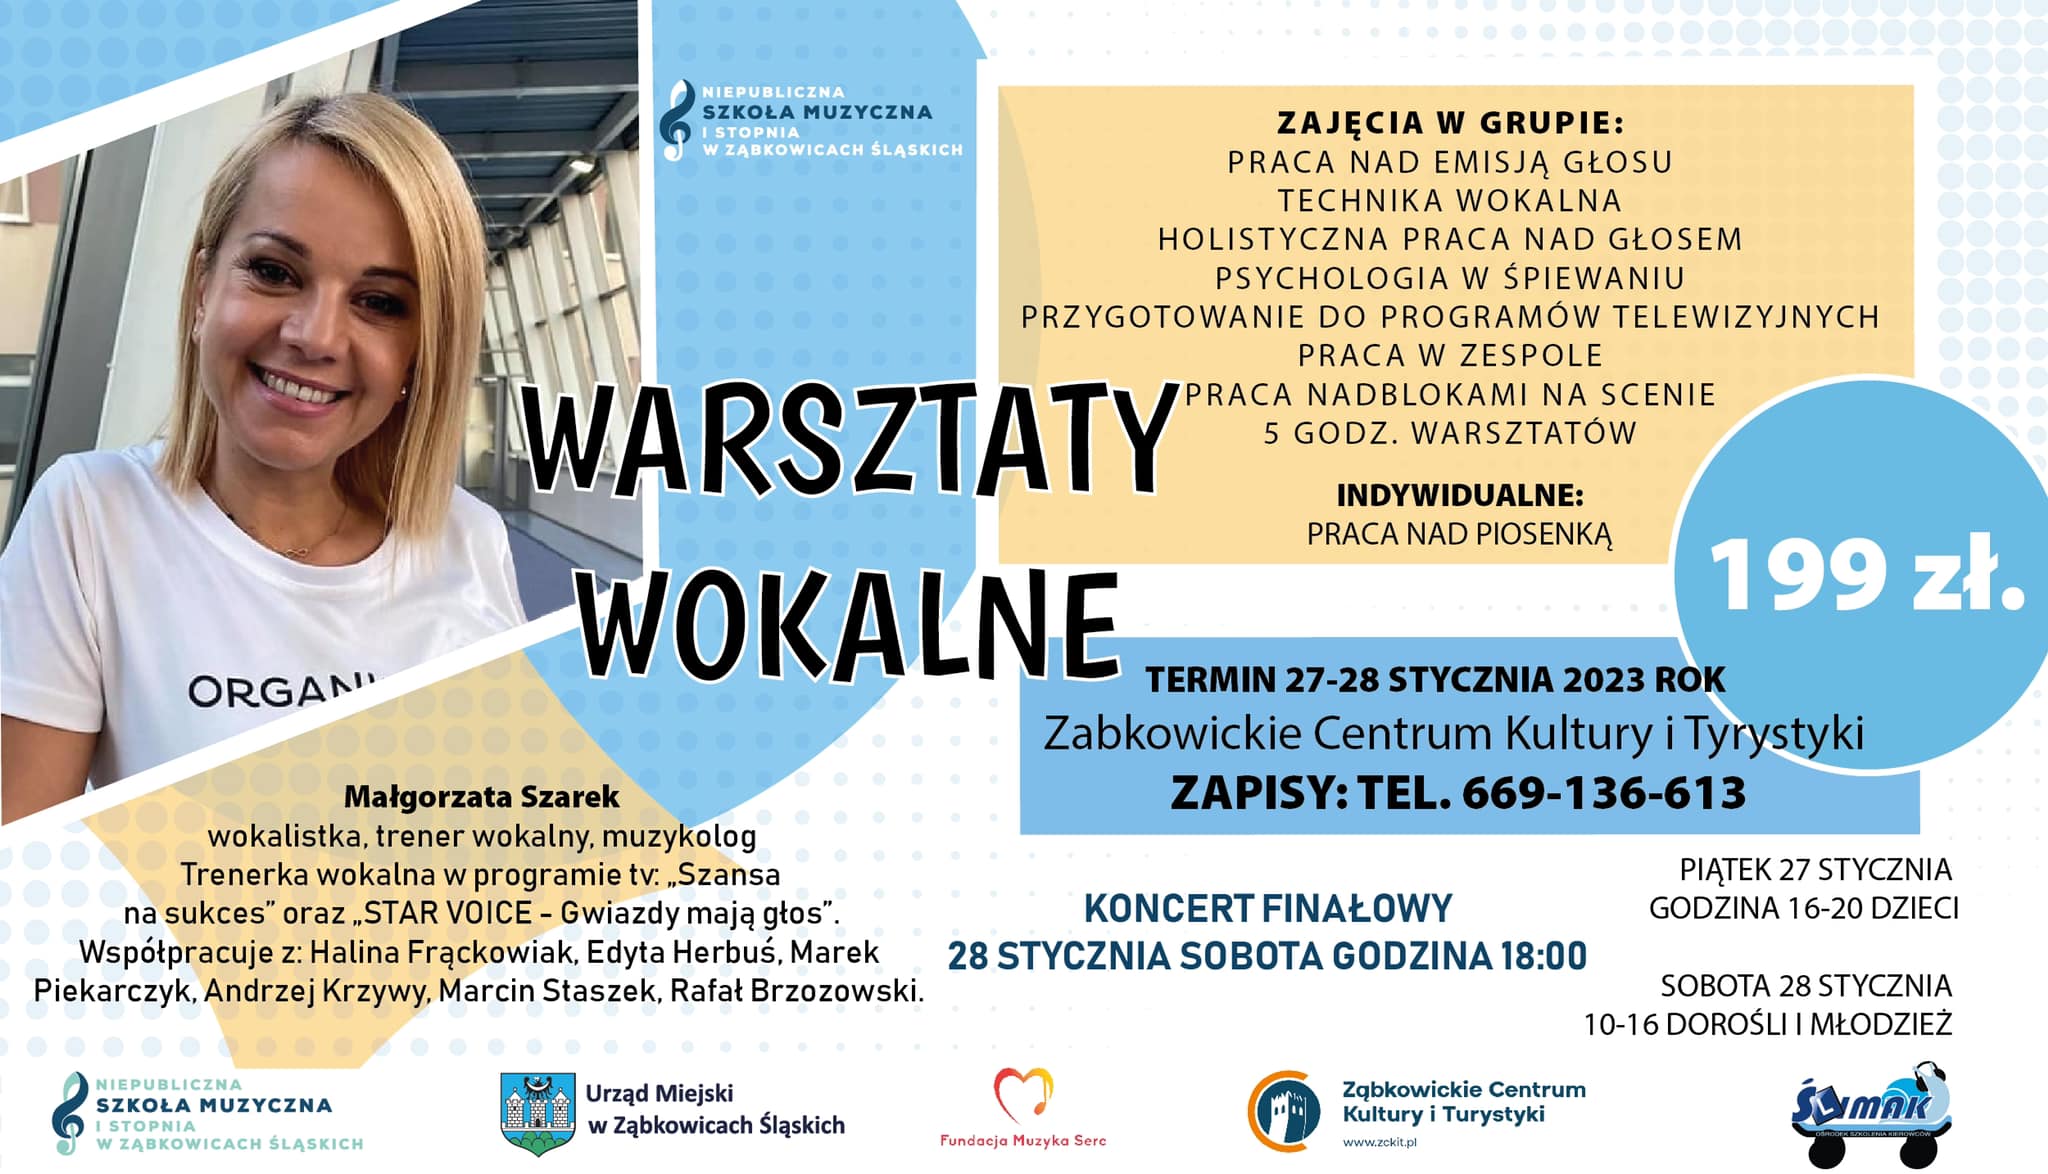 Plakat informujący o Warsztatach Wokalnych z Małgorzatą Szarek 27 i 28 stycznia 2023 w Ząbkowickim Centrum Kultury i Turystyki